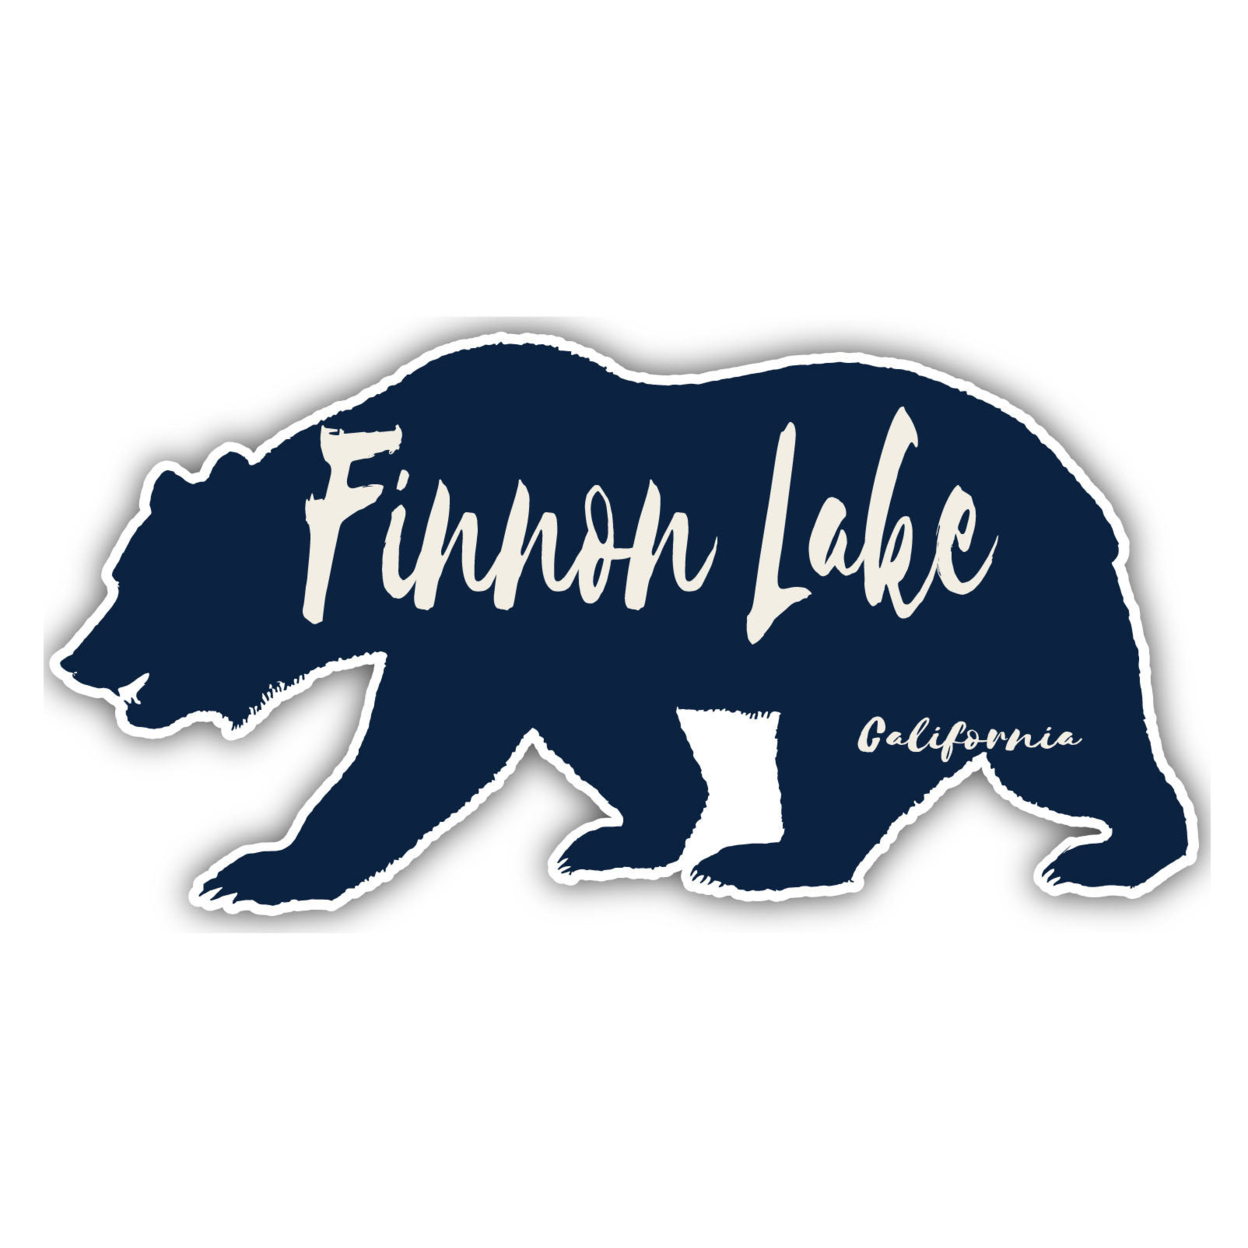 Finnon Lake California Souvenir Decorative Stickers (Choose Theme And Size) - Single Unit, 12-Inch, Tent